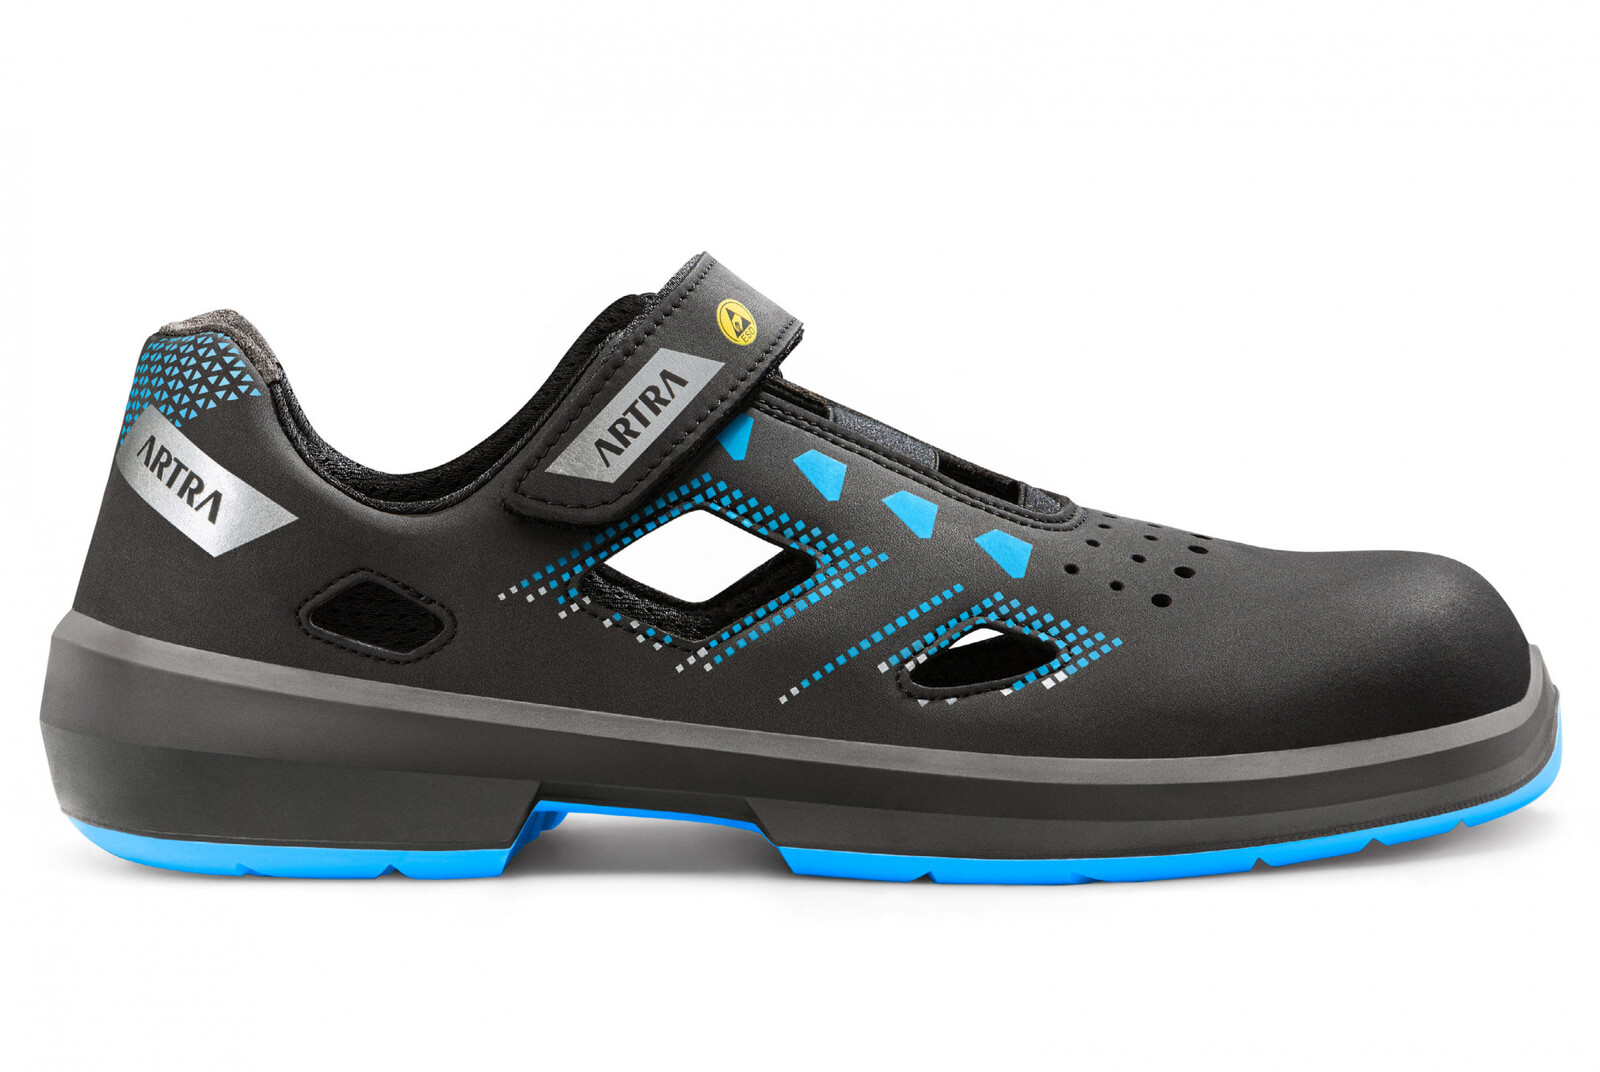 Bezpečnostné sandále Artra Arzo 805 619090 S1P SRC ESD MF - veľkosť: 44, farba: čierna/modrá